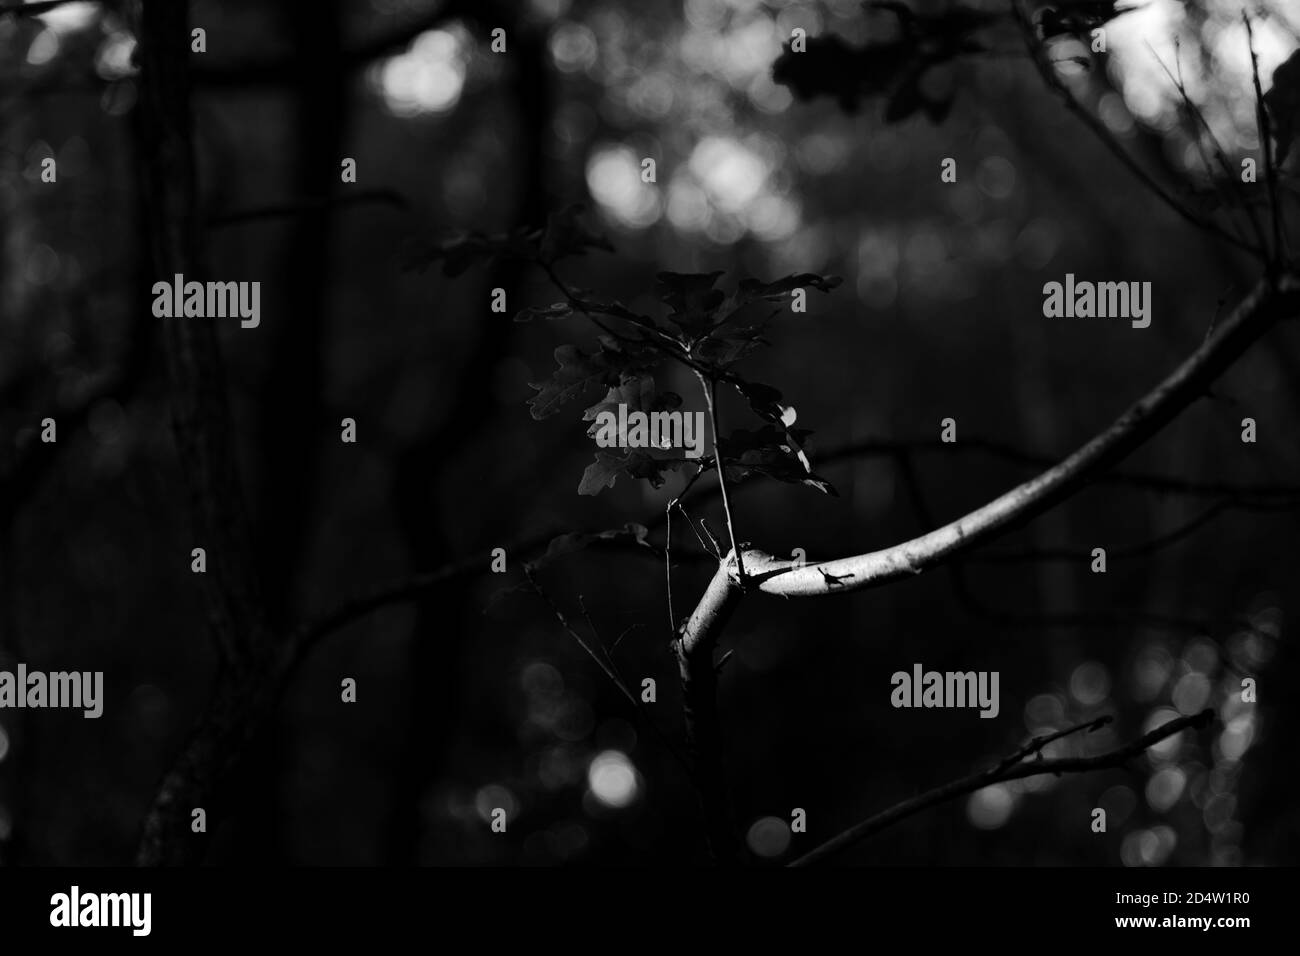 Schöne schwarz-weiße Natur-Foto von Baum Zweig mit neuem Wachstum. Horizontale Komposition, Vollformat, Querformat, Kopierbereich. Stockfoto